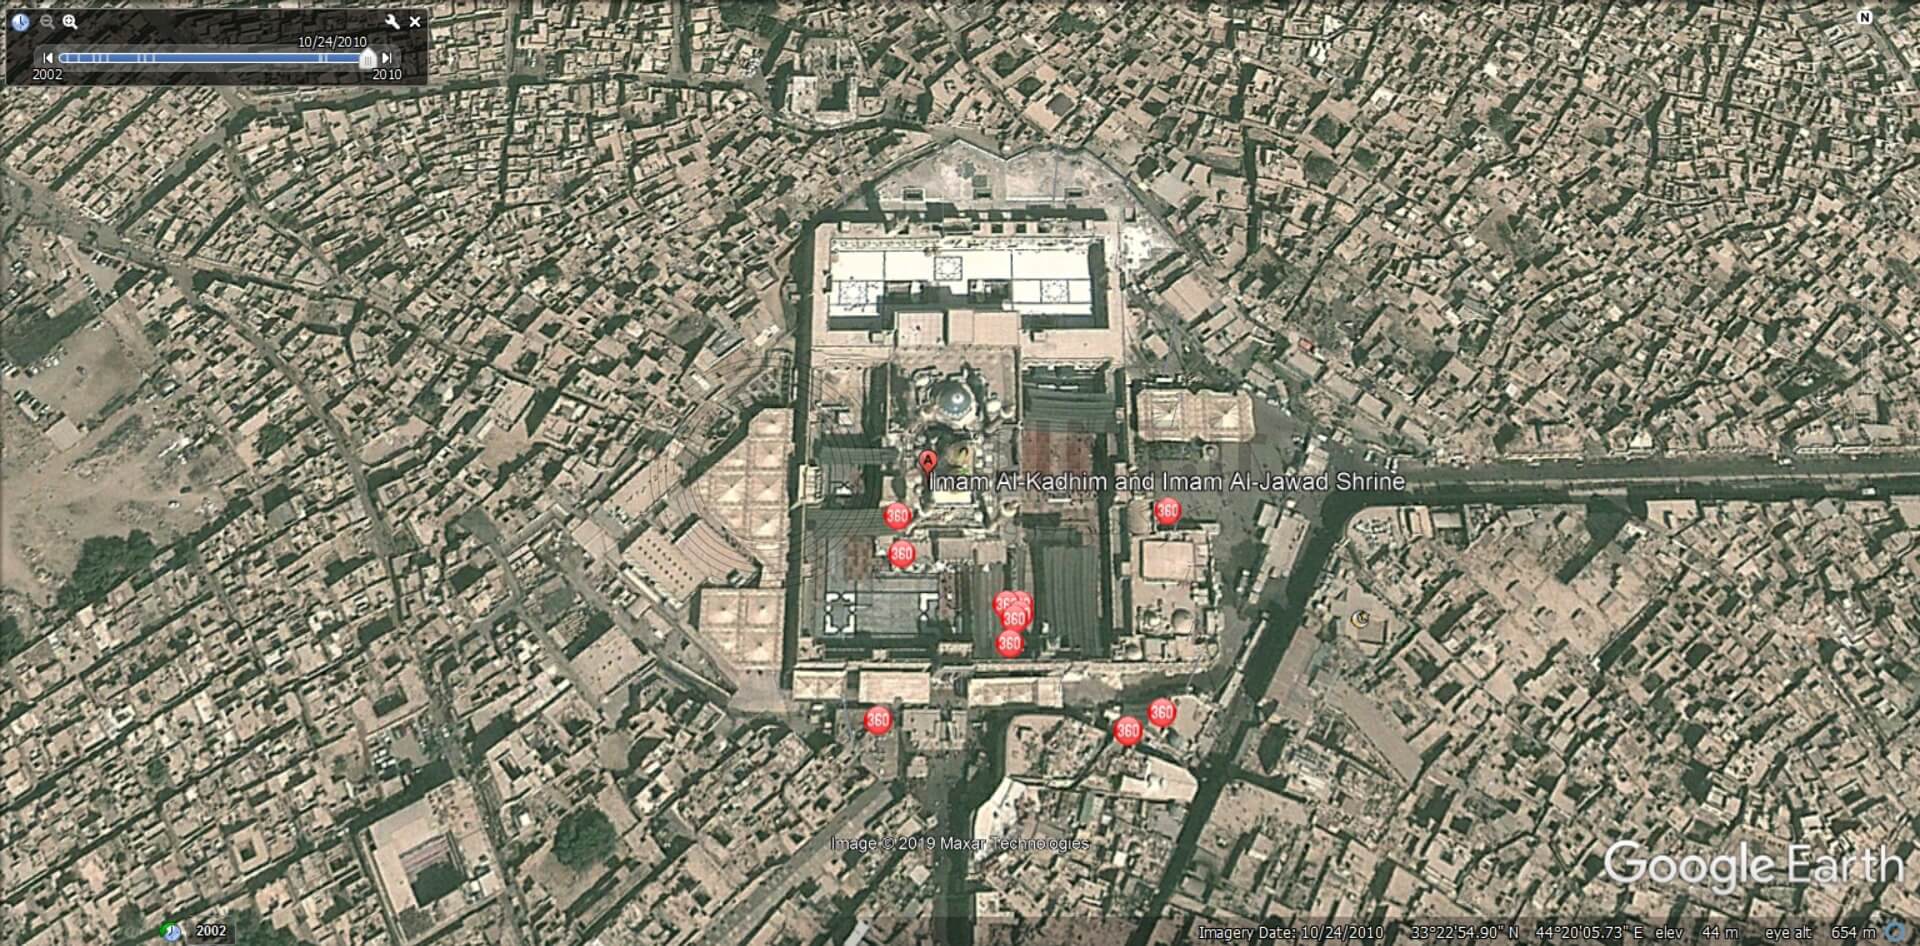 عکس ماهواره ای کاظمین در گوگل ارث